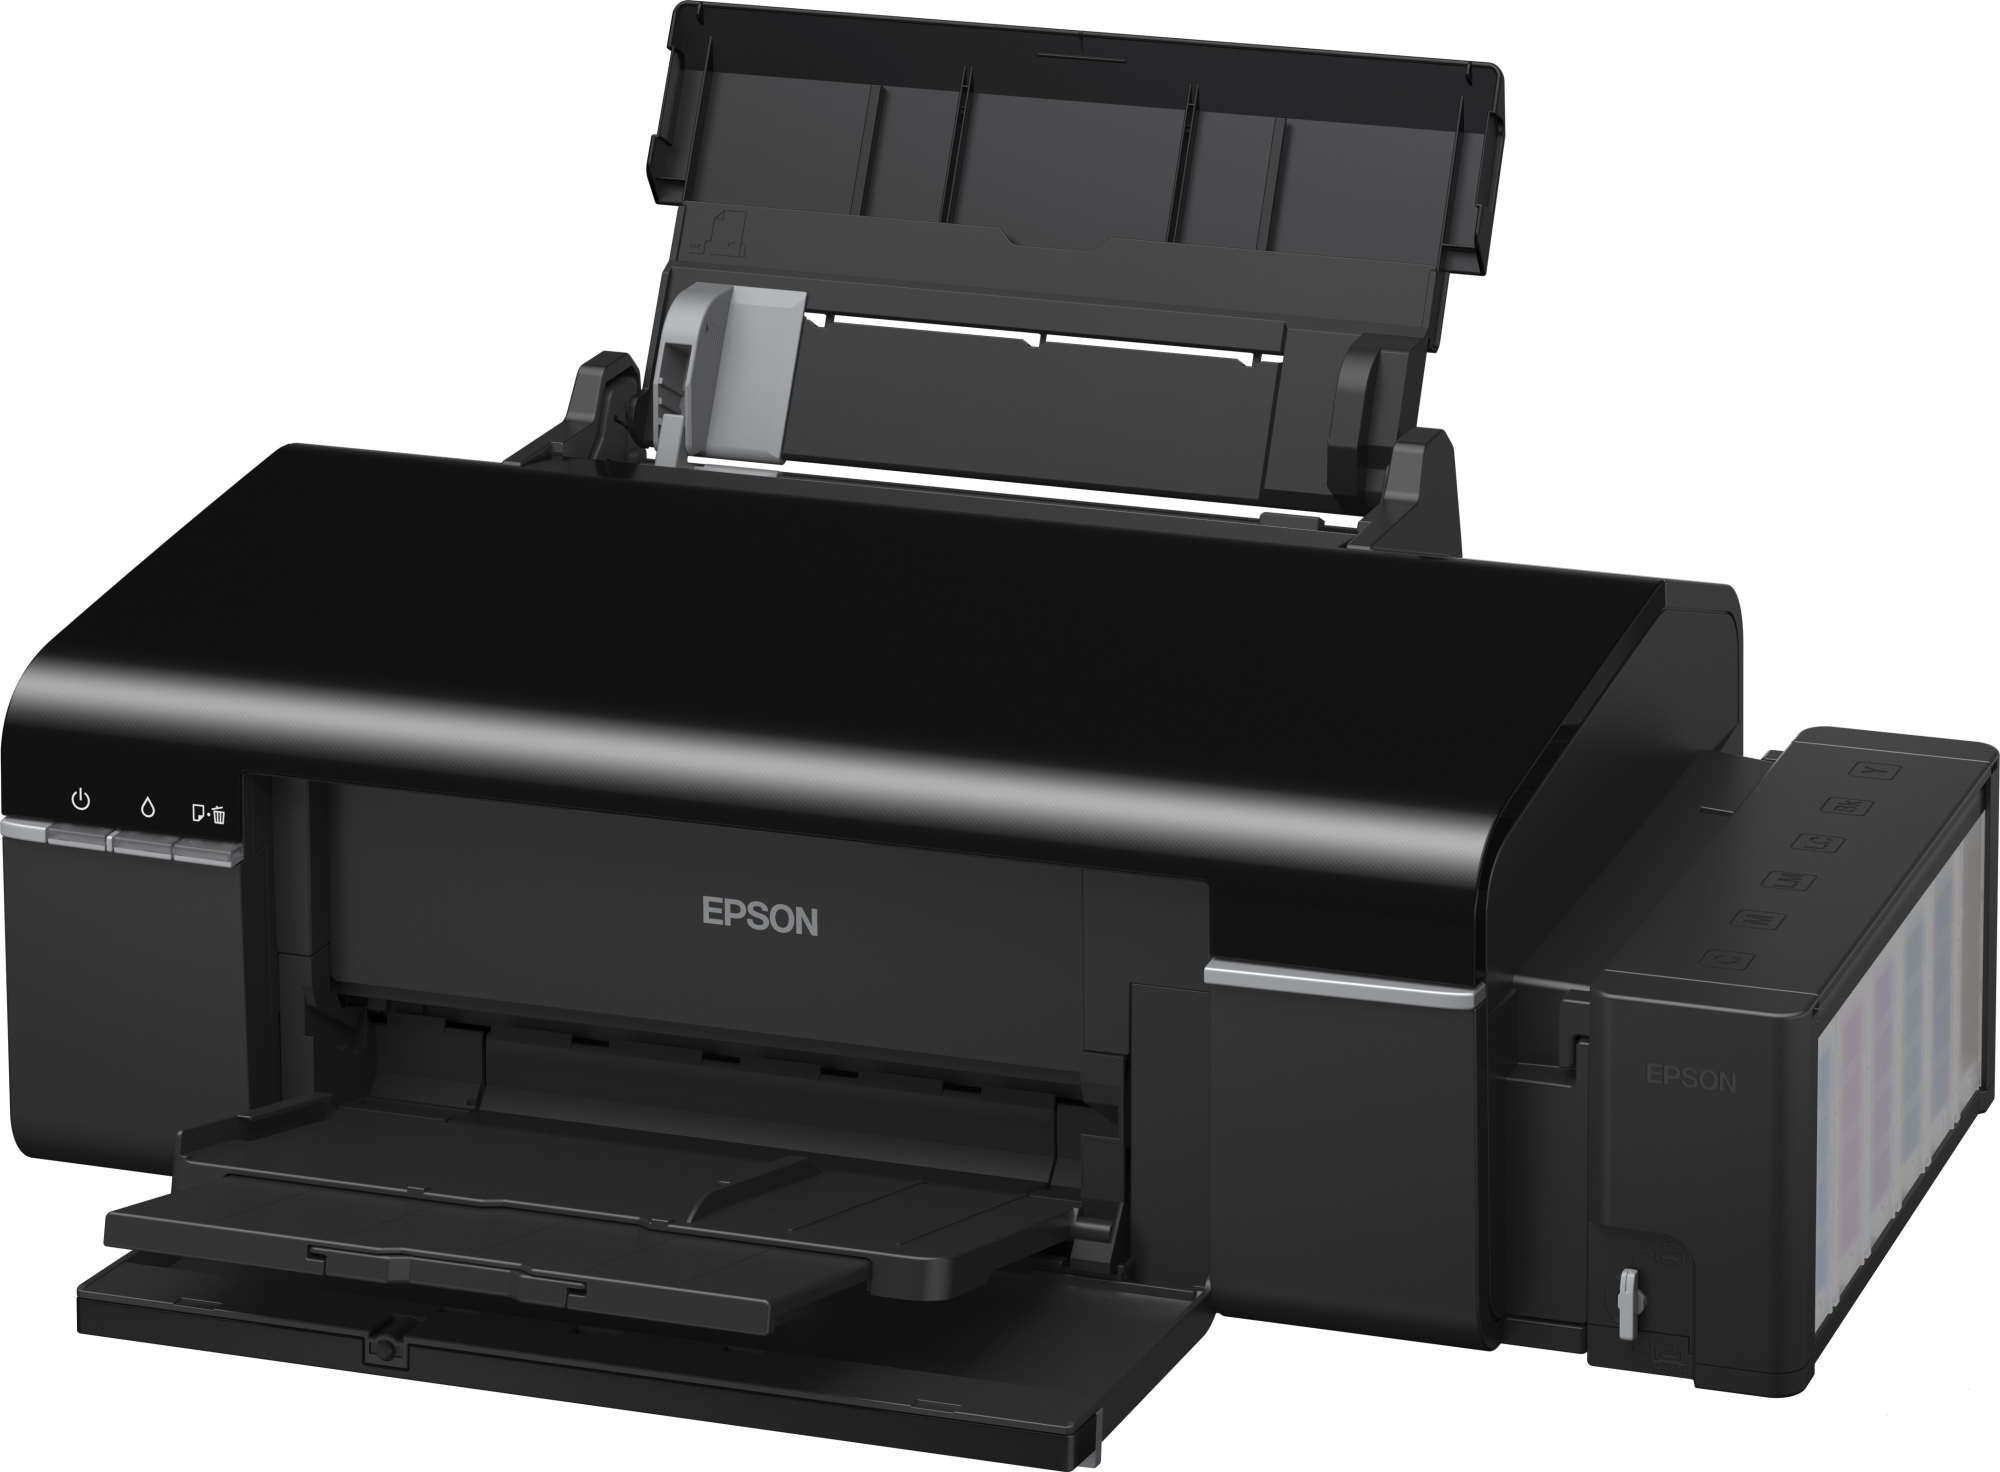 Эпсон л 800. Epson l800. Принтер Эпсон l800. Принтер Эпсон 805. Струйный принтер Epson l800.